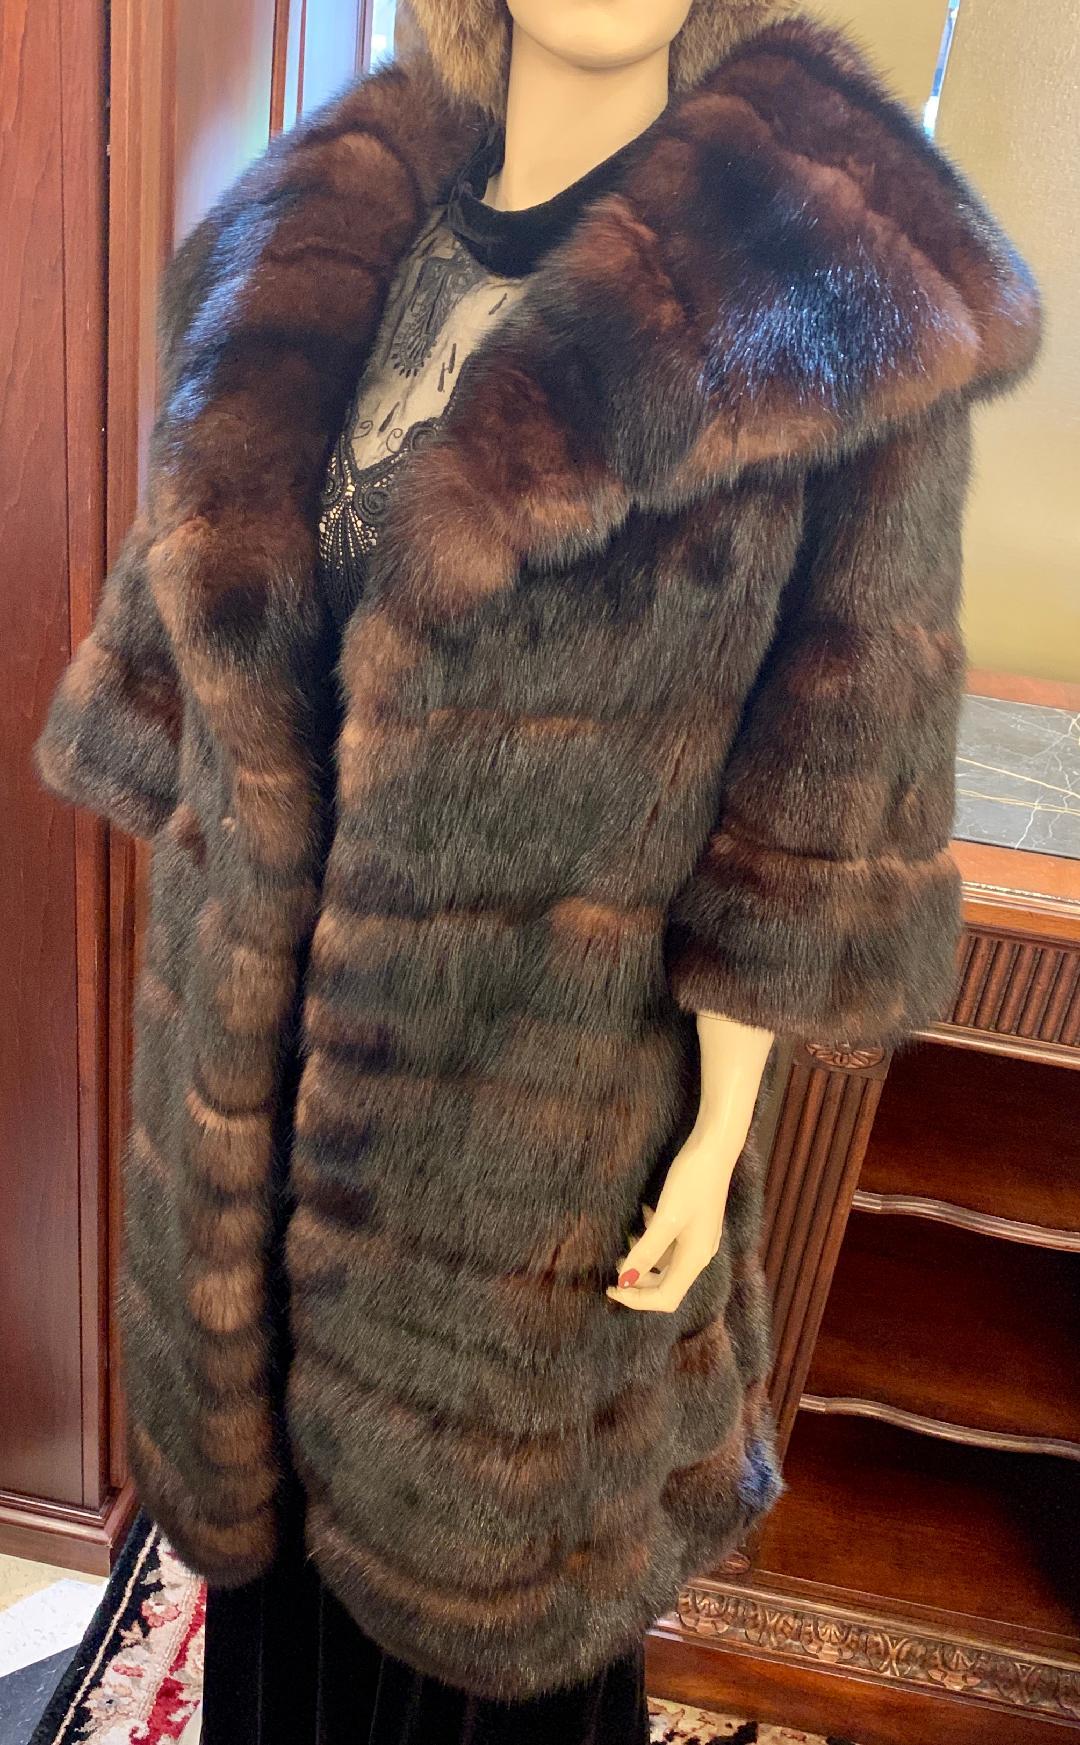 Très sophistiqué et somptueux, ce manteau de fourrure de zibeline russe est doté d'un large col châle très tendance. La fourrure est d'un brun foncé très riche, avec de magnifiques reflets bruns plus clairs, ce qui est le signe d'une zibeline de